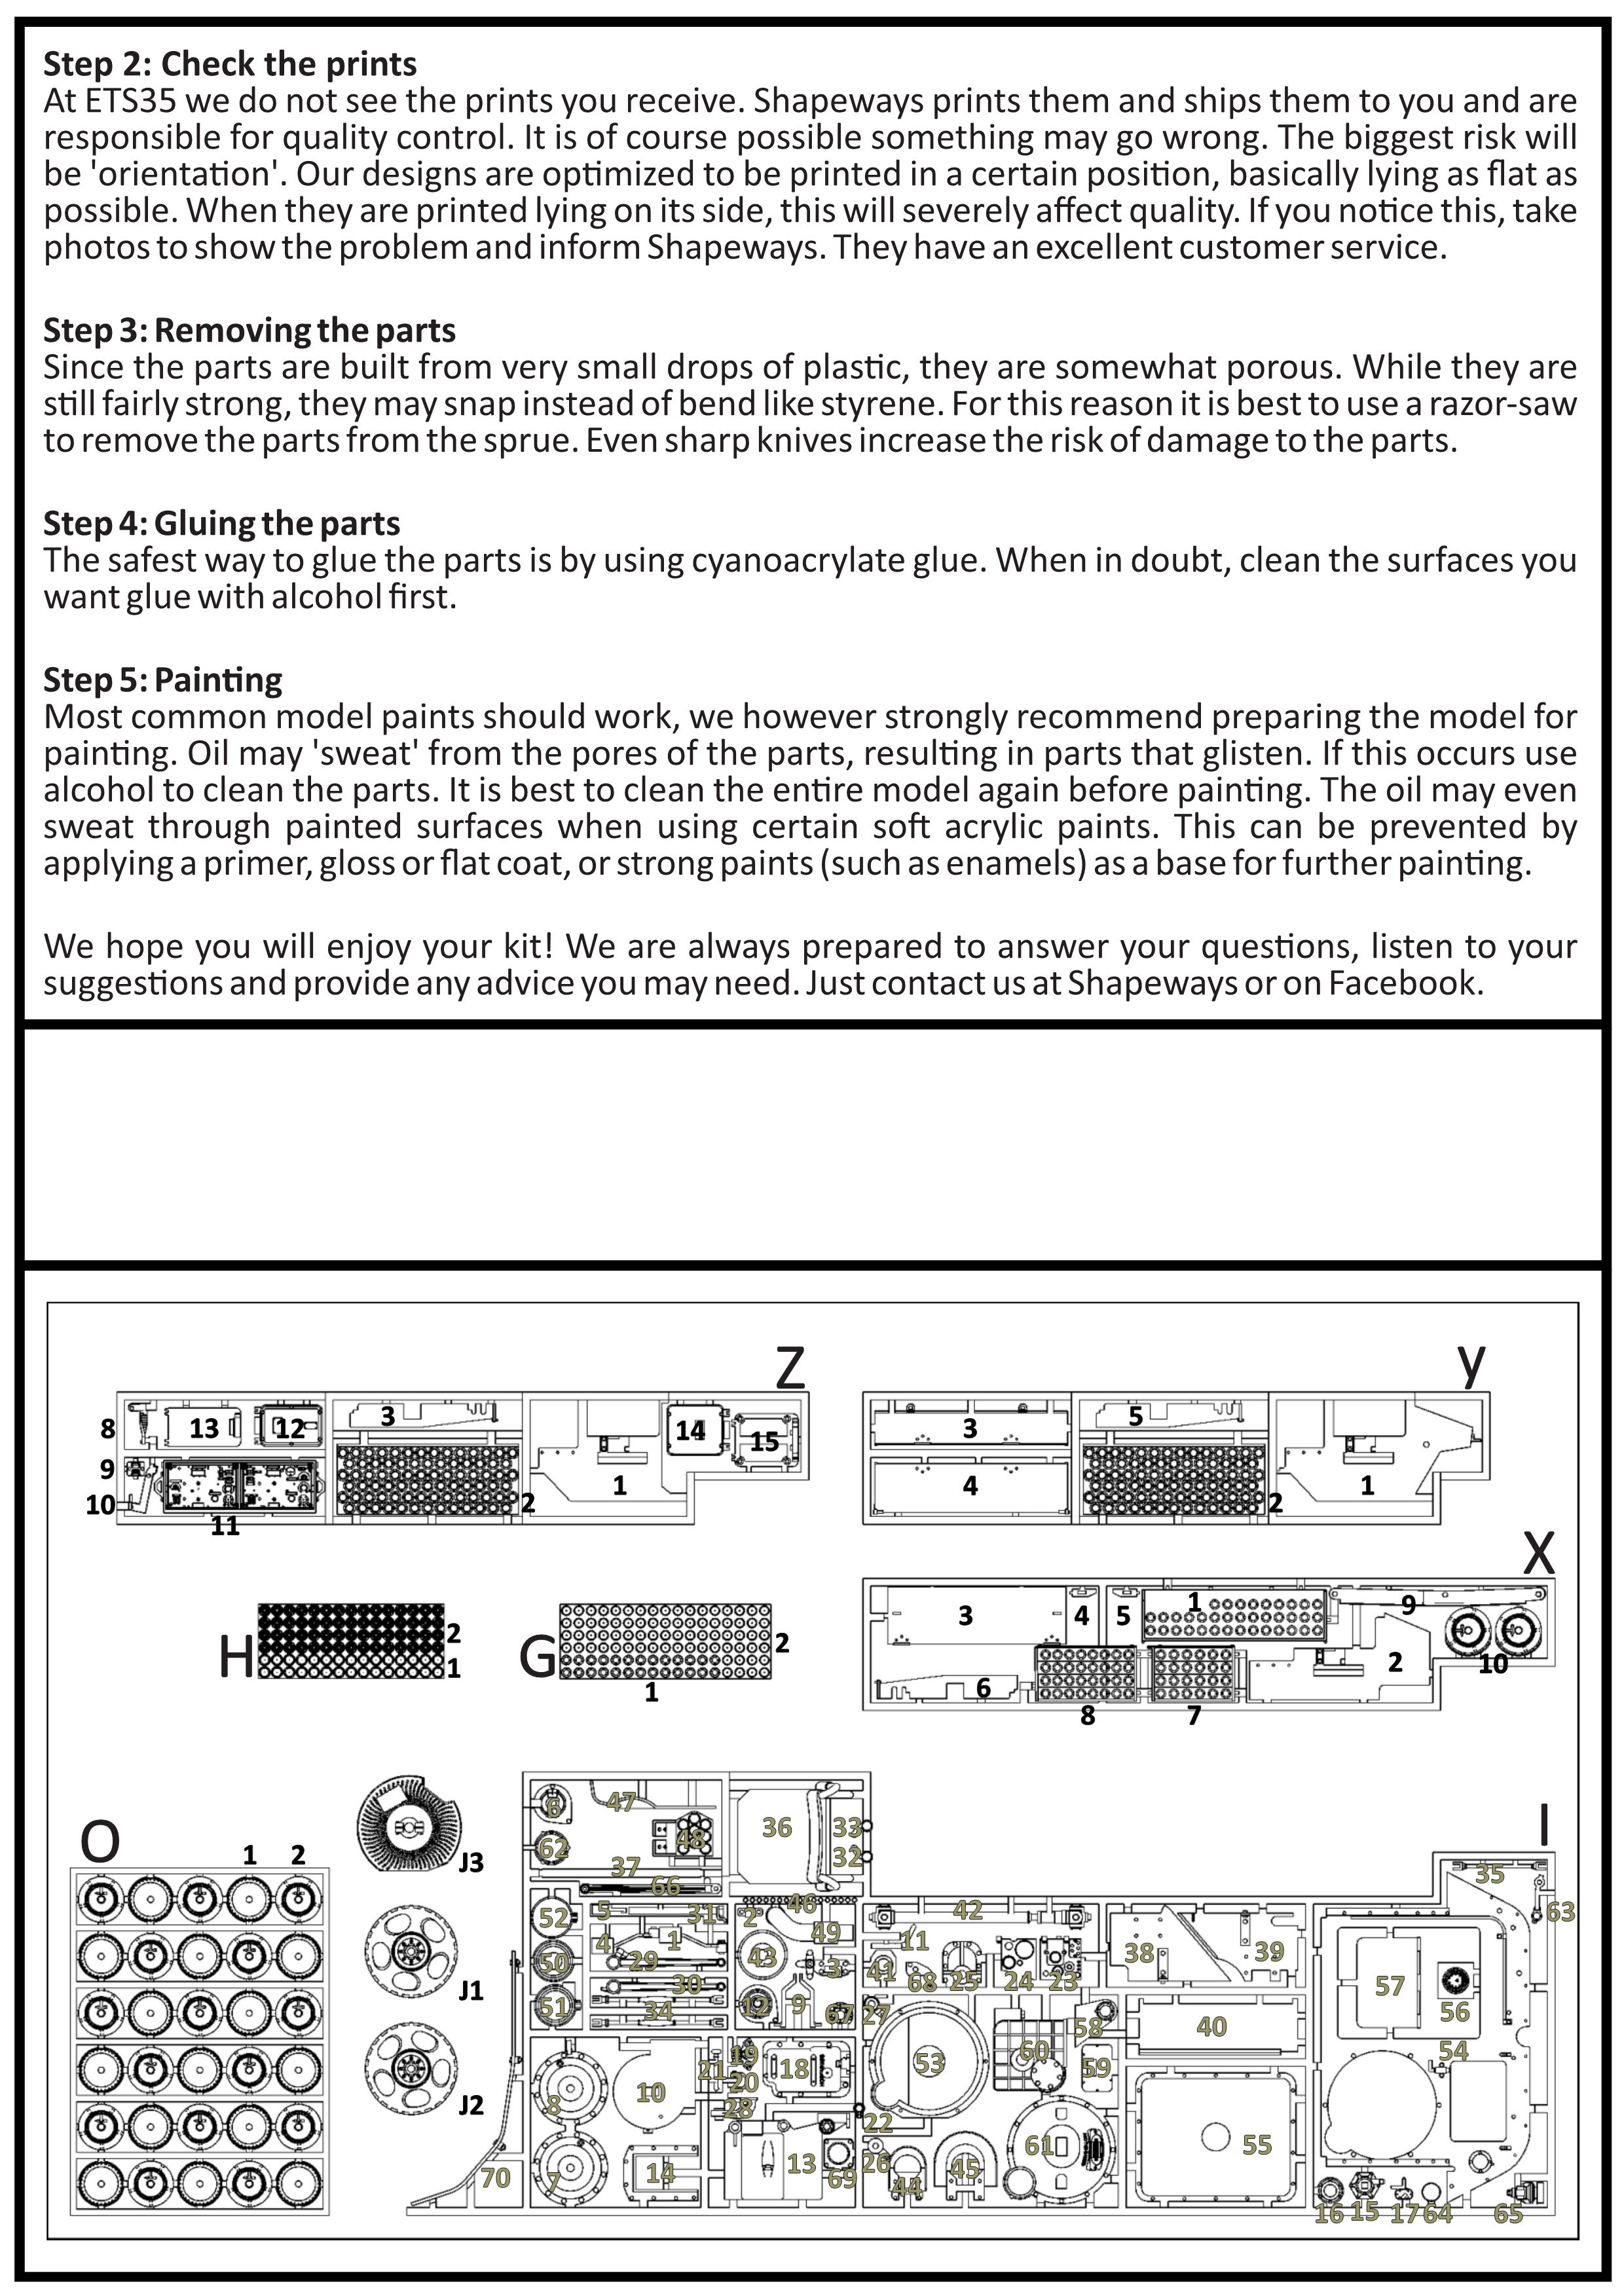 ETS35X01 - H39 Manual - Interior - p02 v2.jpg